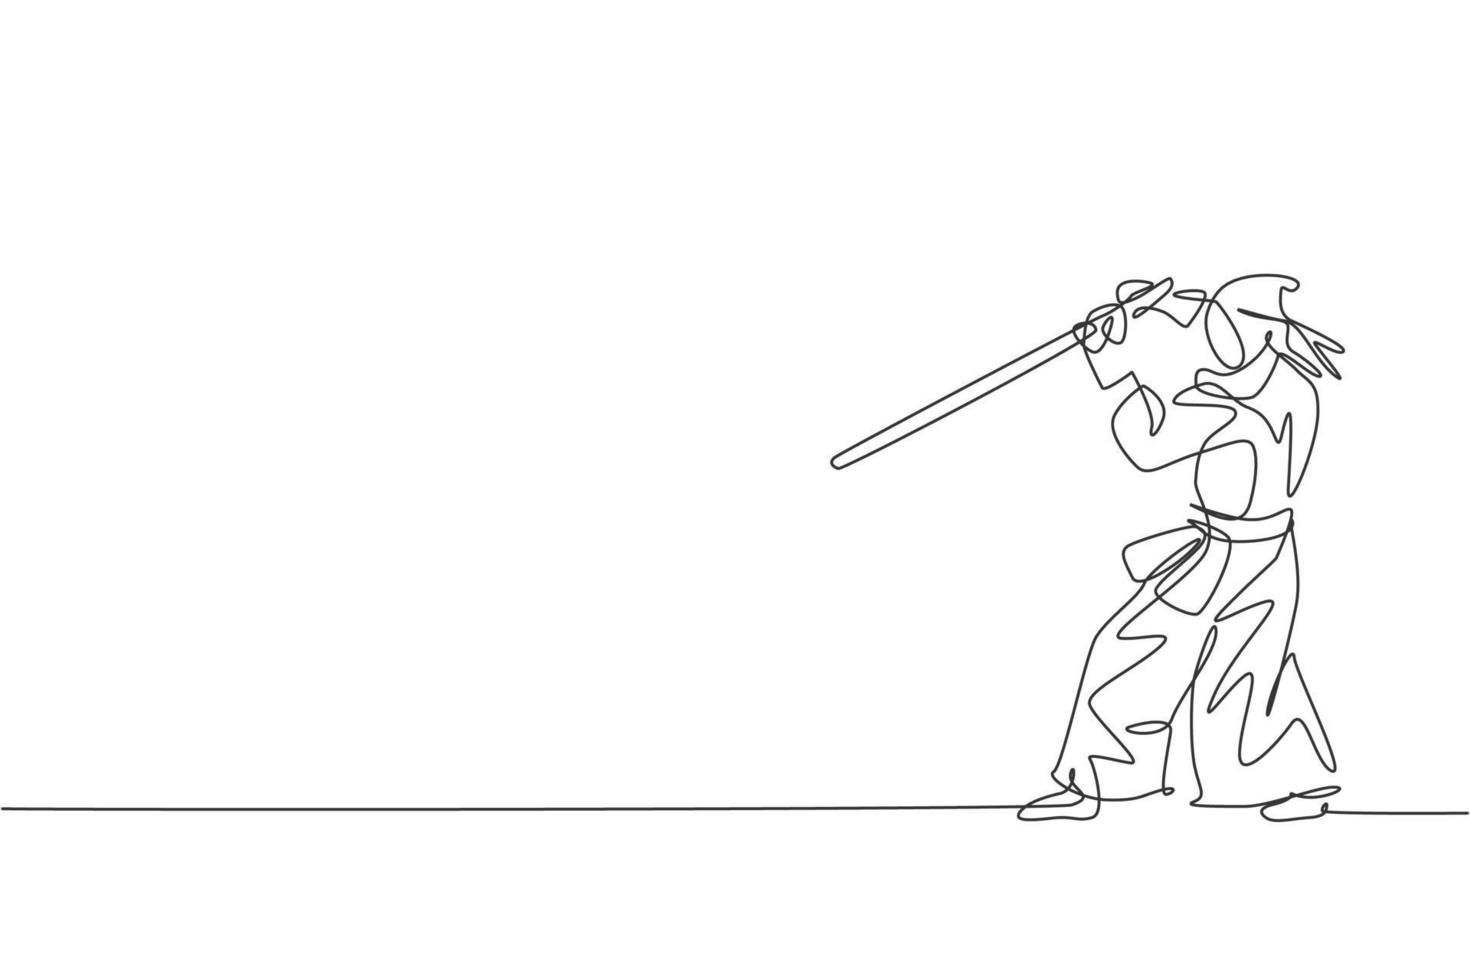 uma única linha de desenho jovem energético exercício kendo movimento de defesa com espada de madeira na ilustração em vetor gráfico do centro de ginástica. conceito de esporte de luta combativa. design moderno de desenho de linha contínua